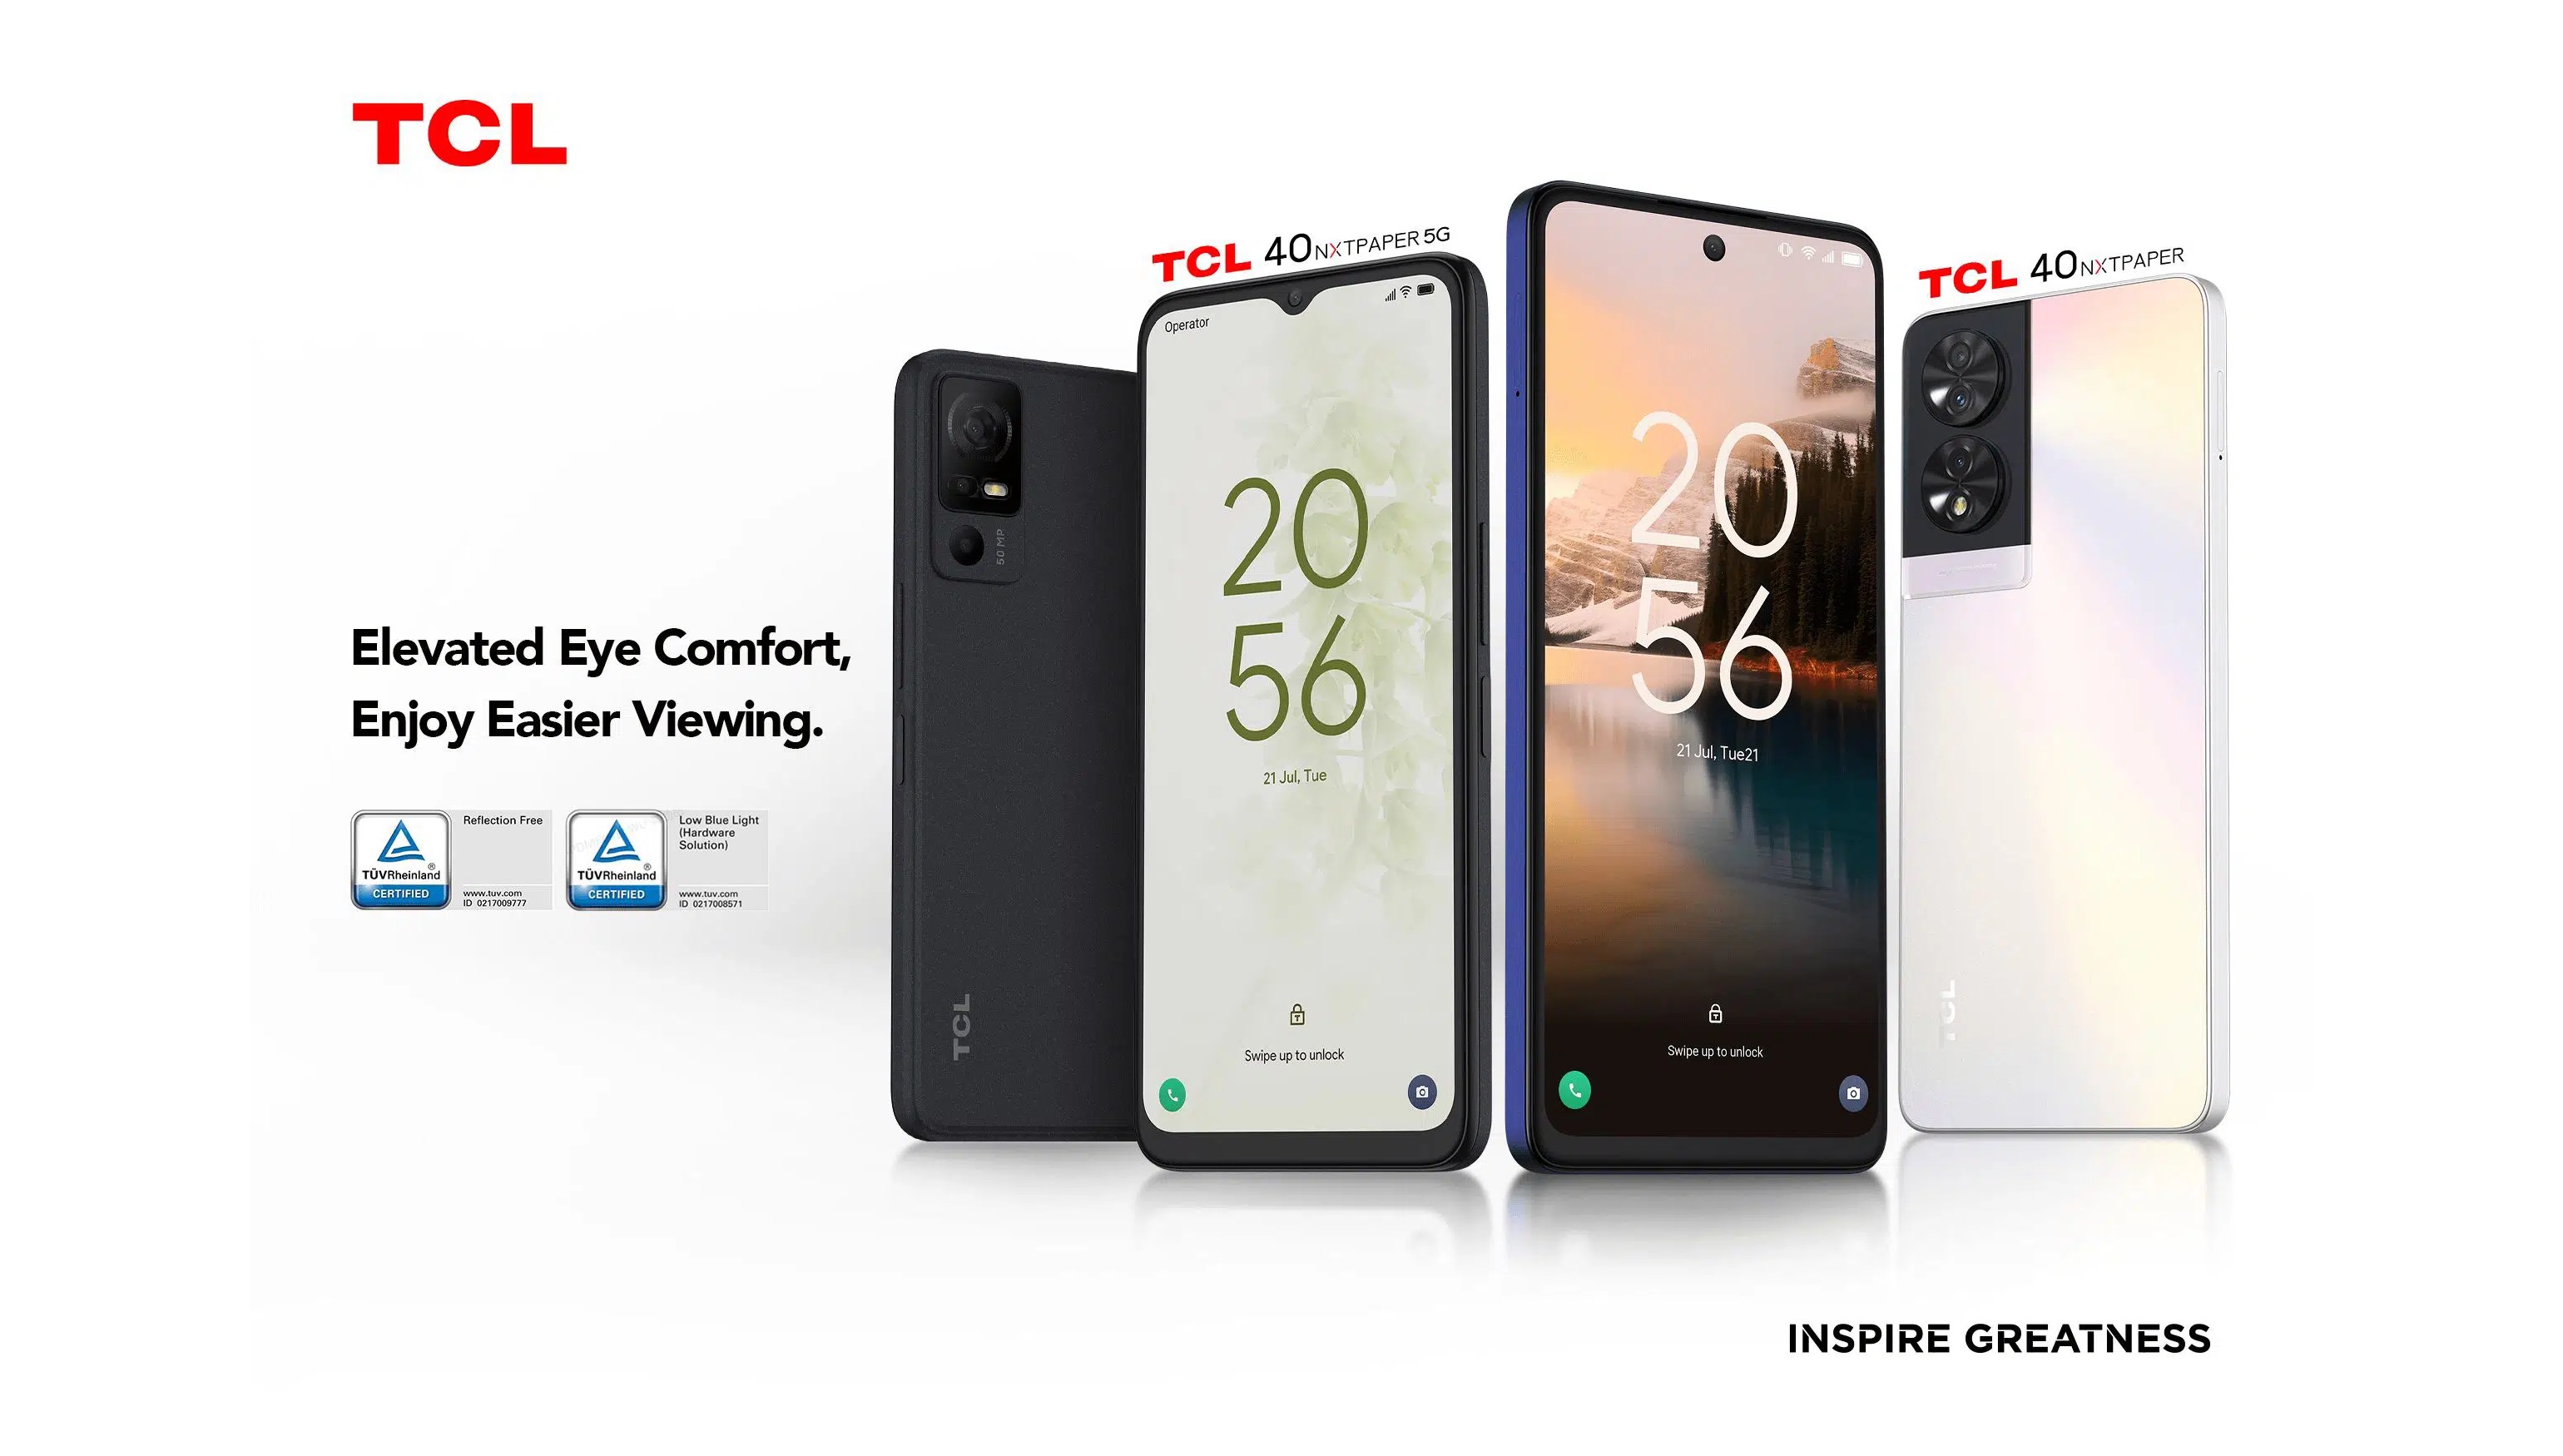 Serie TCL 40 NXTPAPER: Los primeros smartphones del mundo con pantallas a  todo color similares a las de la tinta electrónica -  News